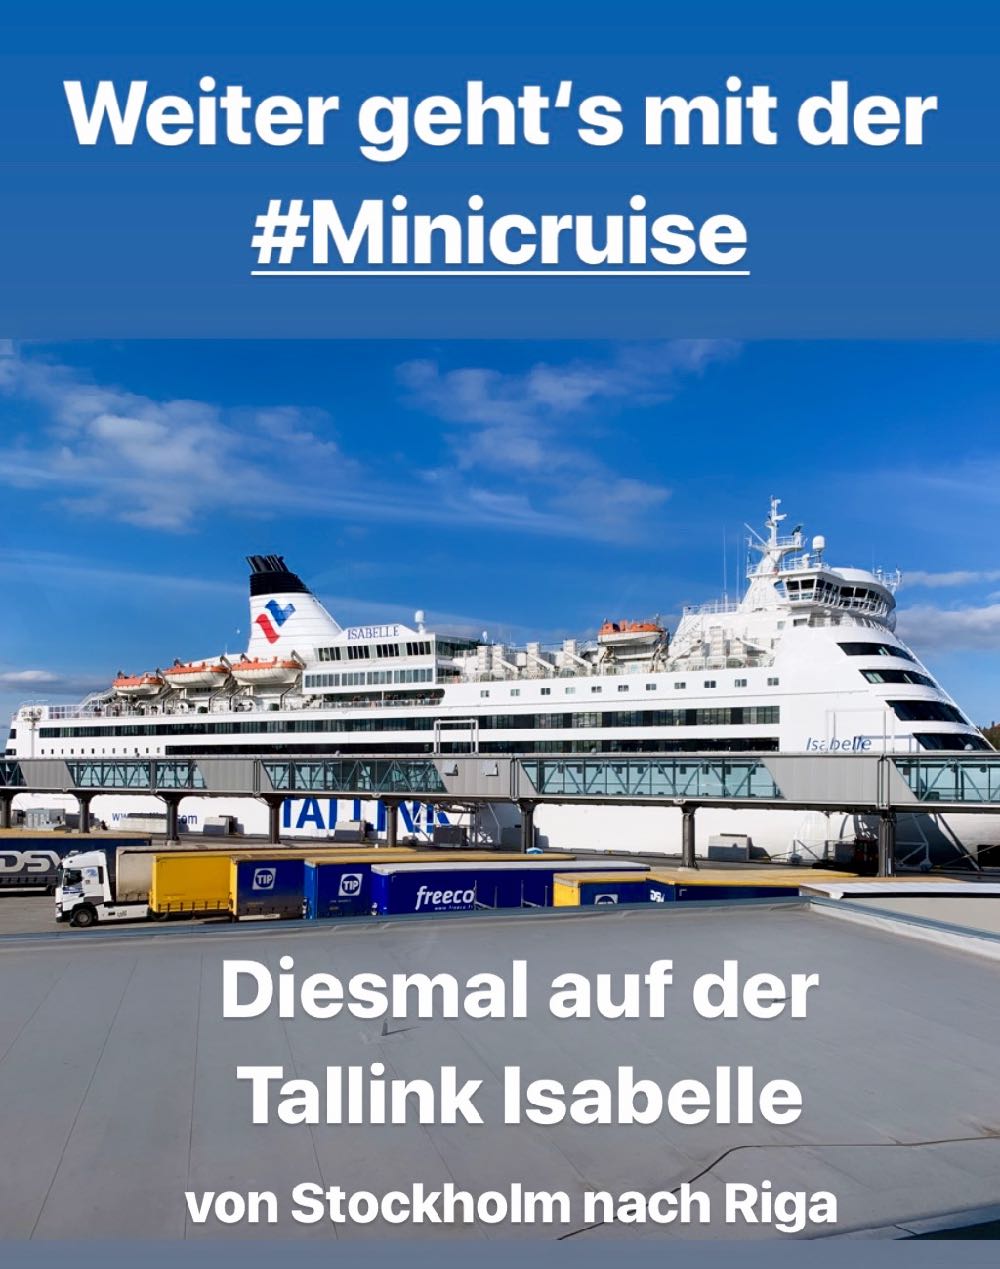 Kreuzfahrt-Faehre Tallink Isabelle im Hafen von Stockholm